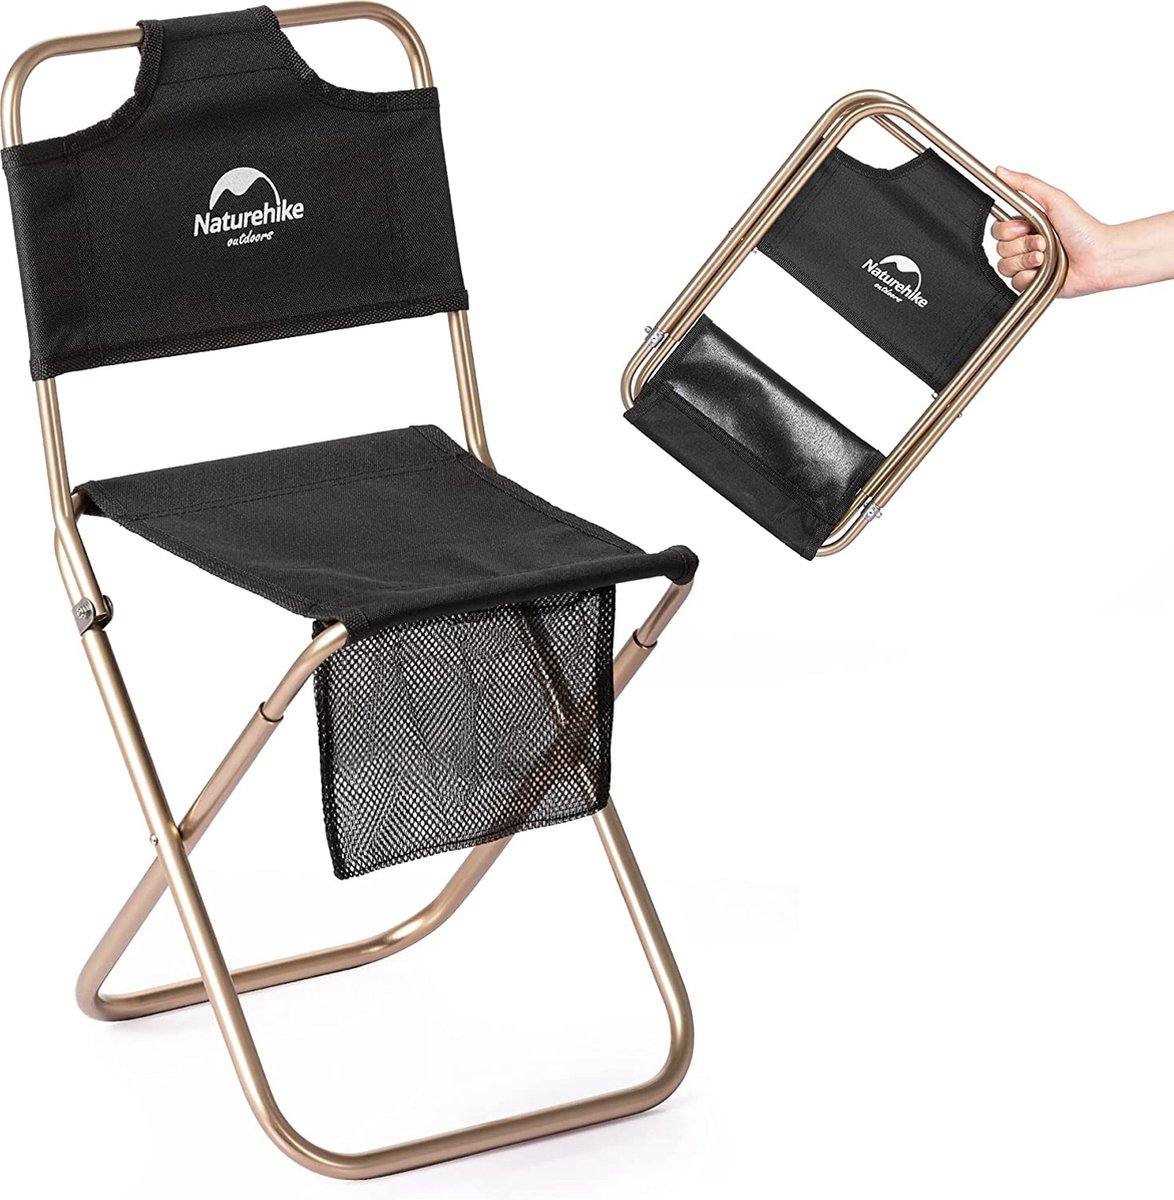 Tabourets De Camping Tabouret Pliant Portable Mini Chaises